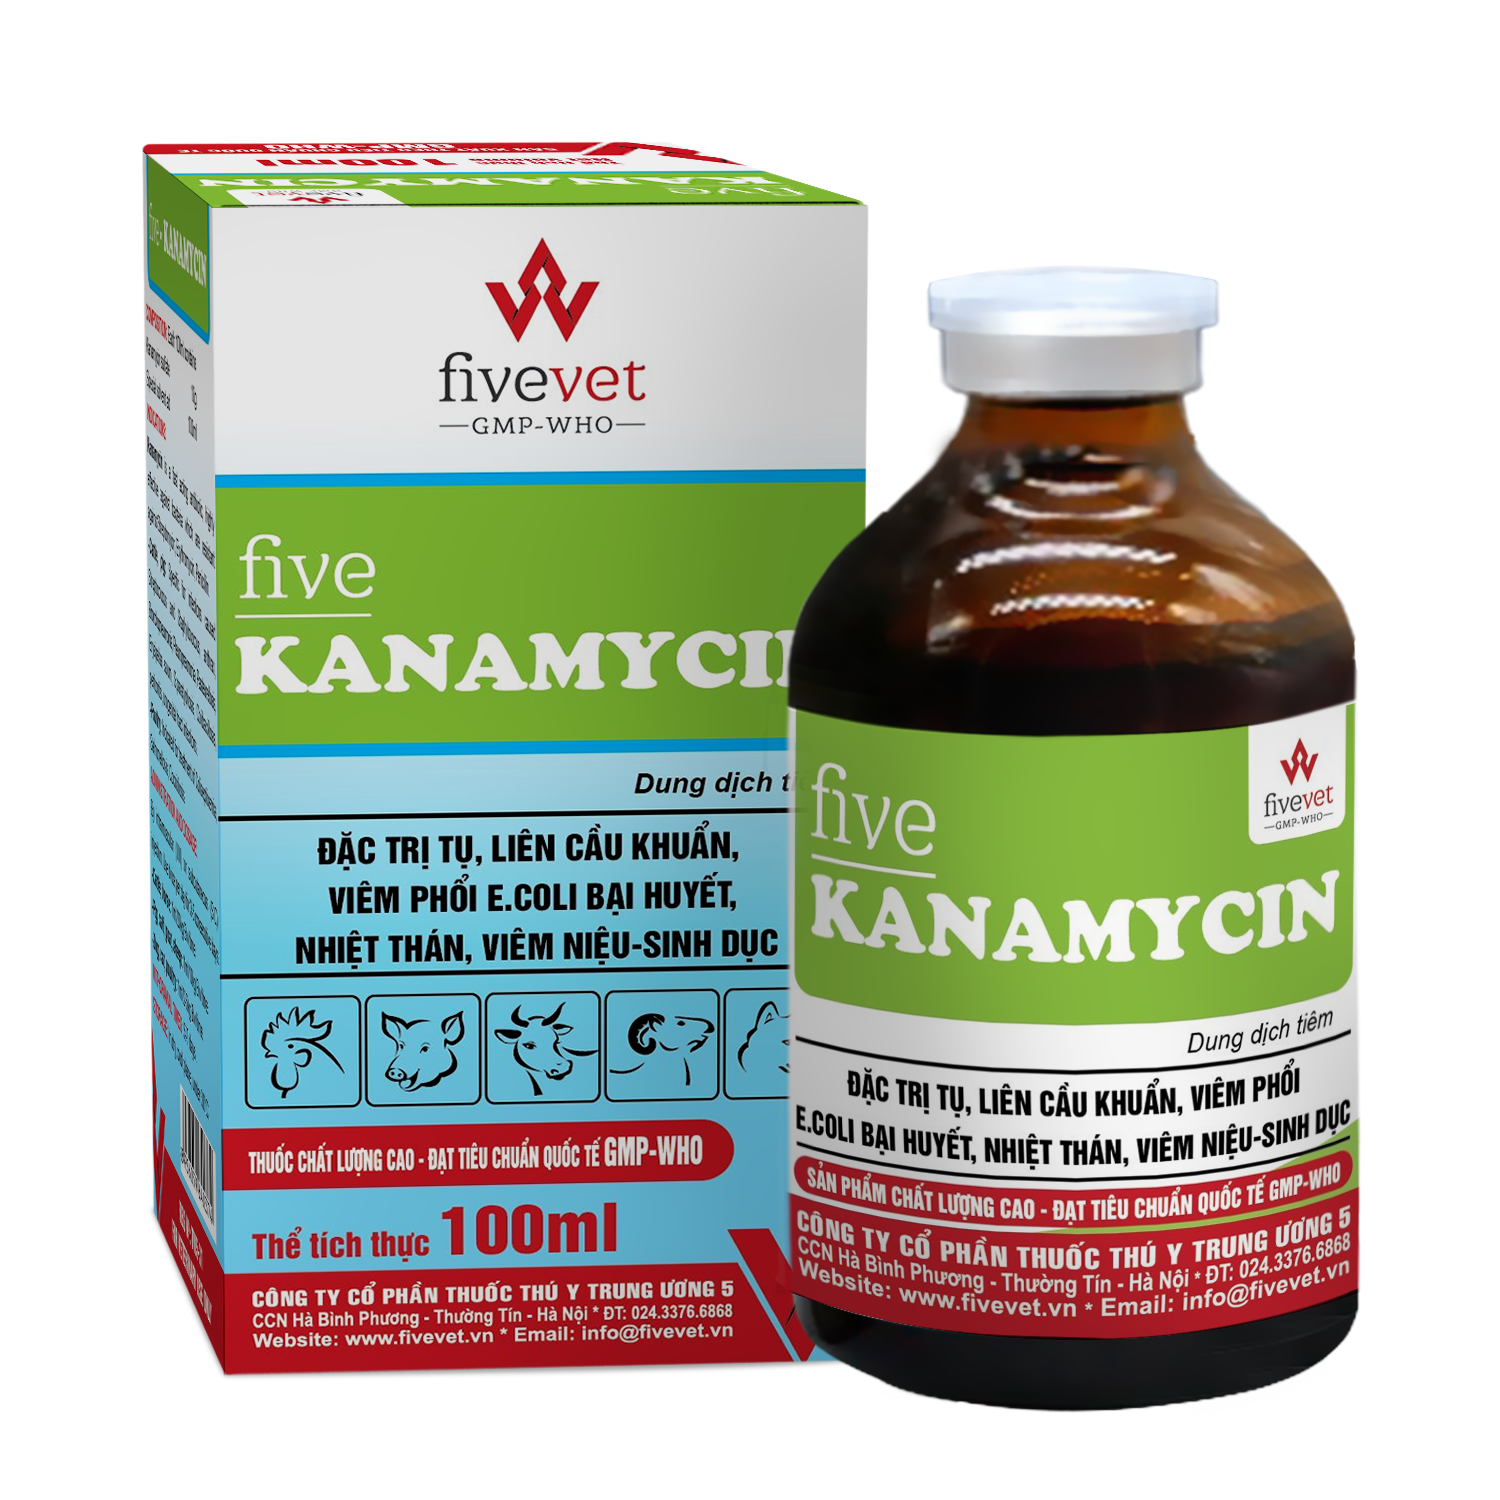 Five-Kanamycin